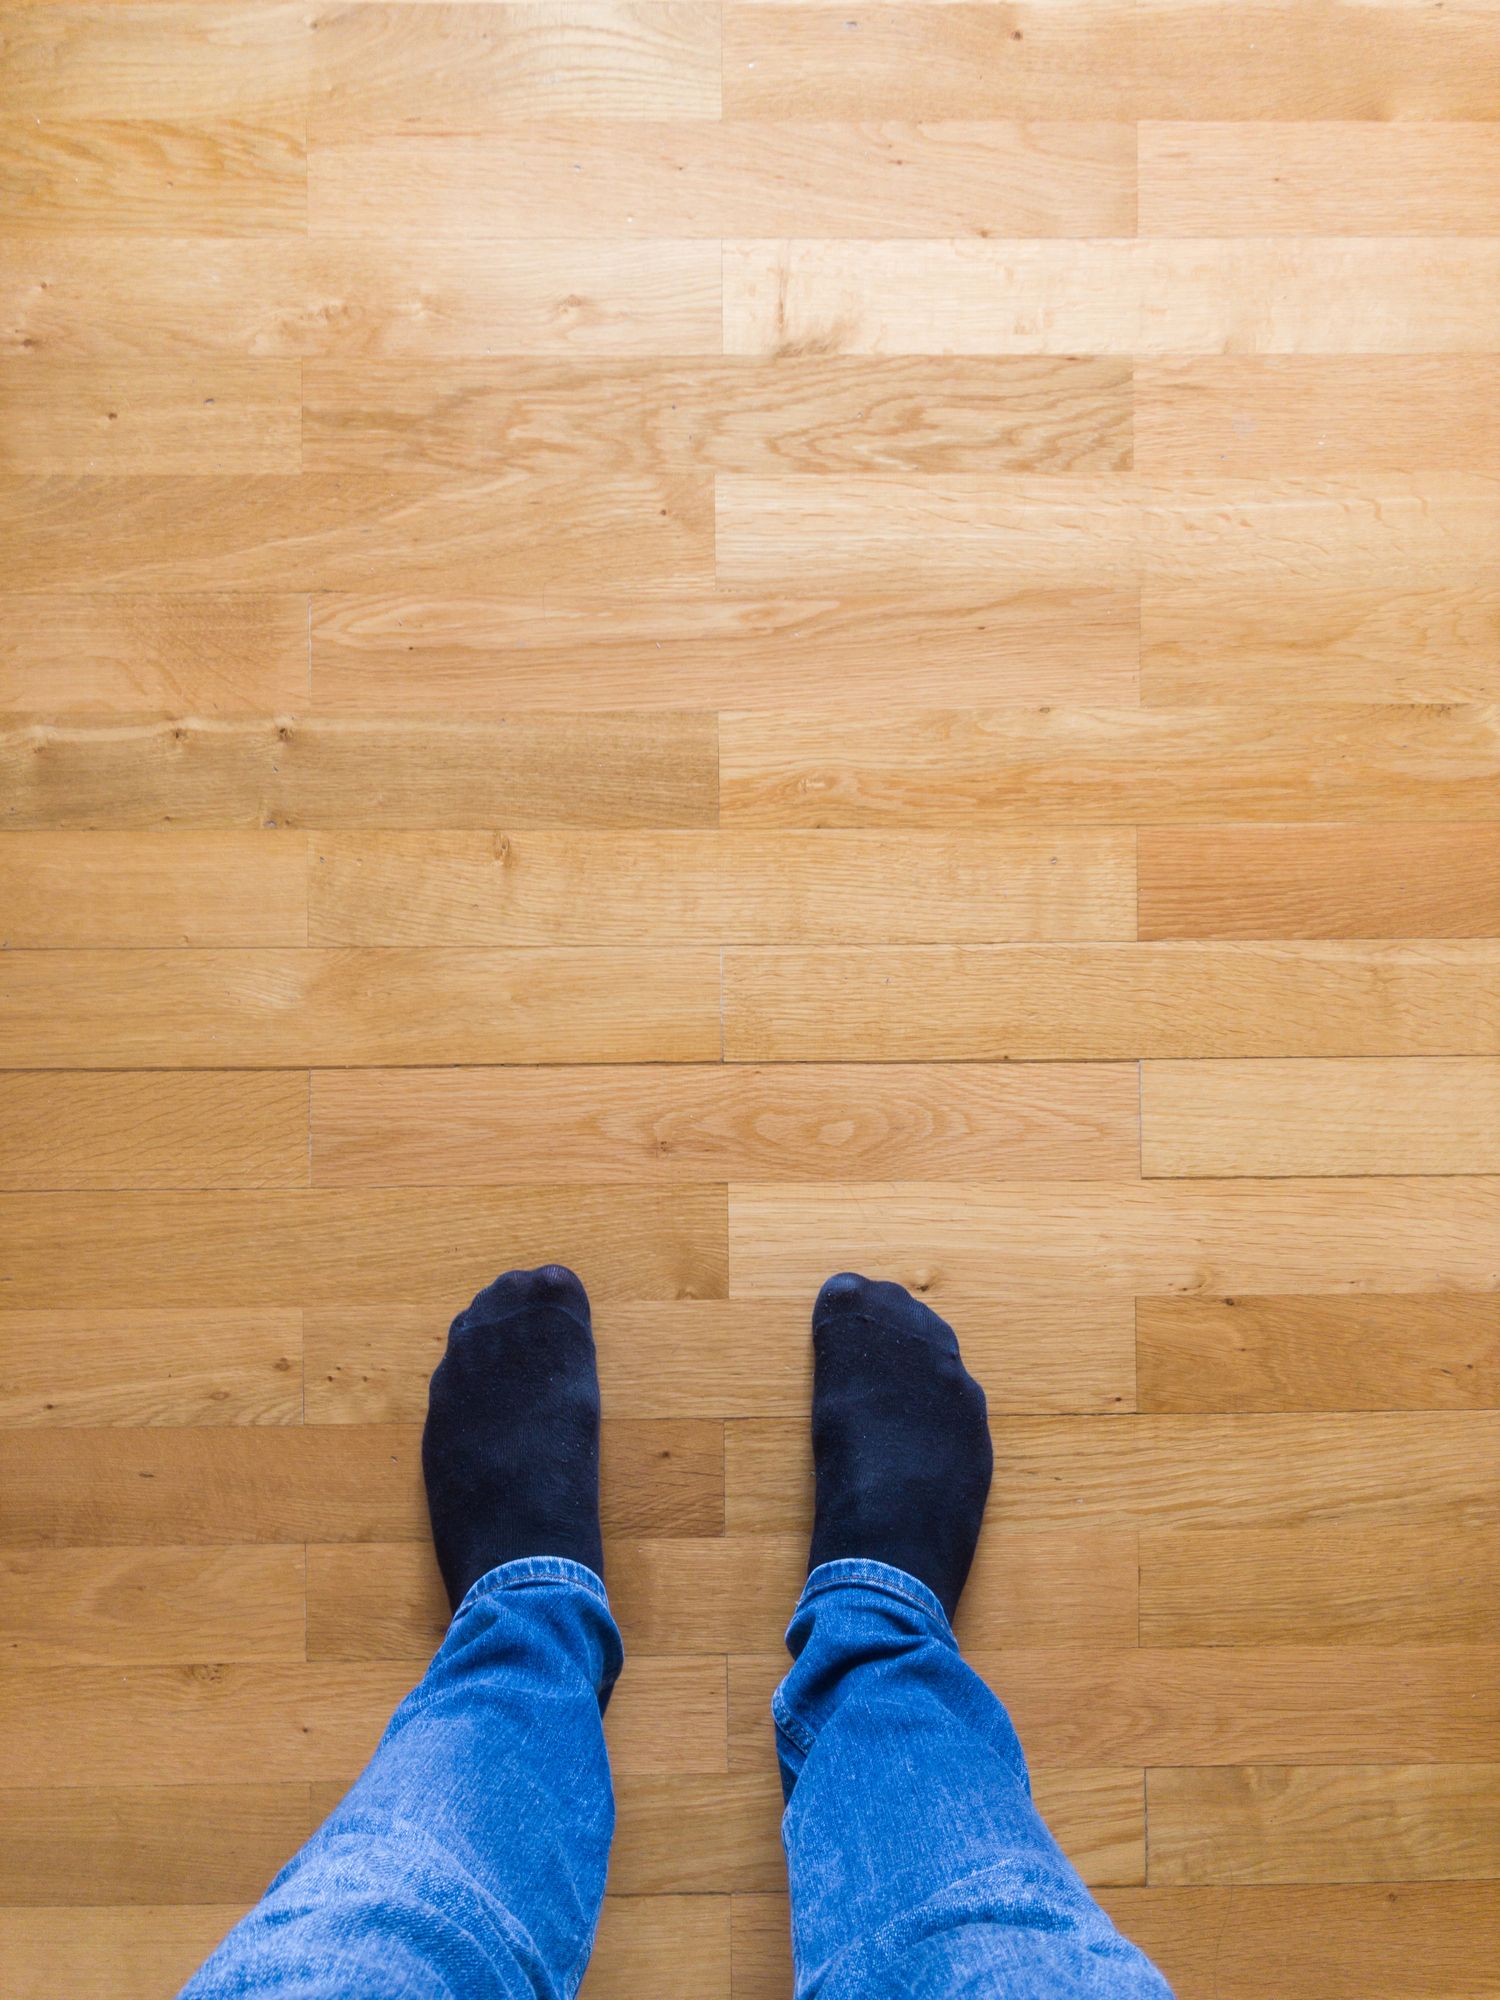 How To Fix A Squeaky Floor, New Hardwood Floors Squeak